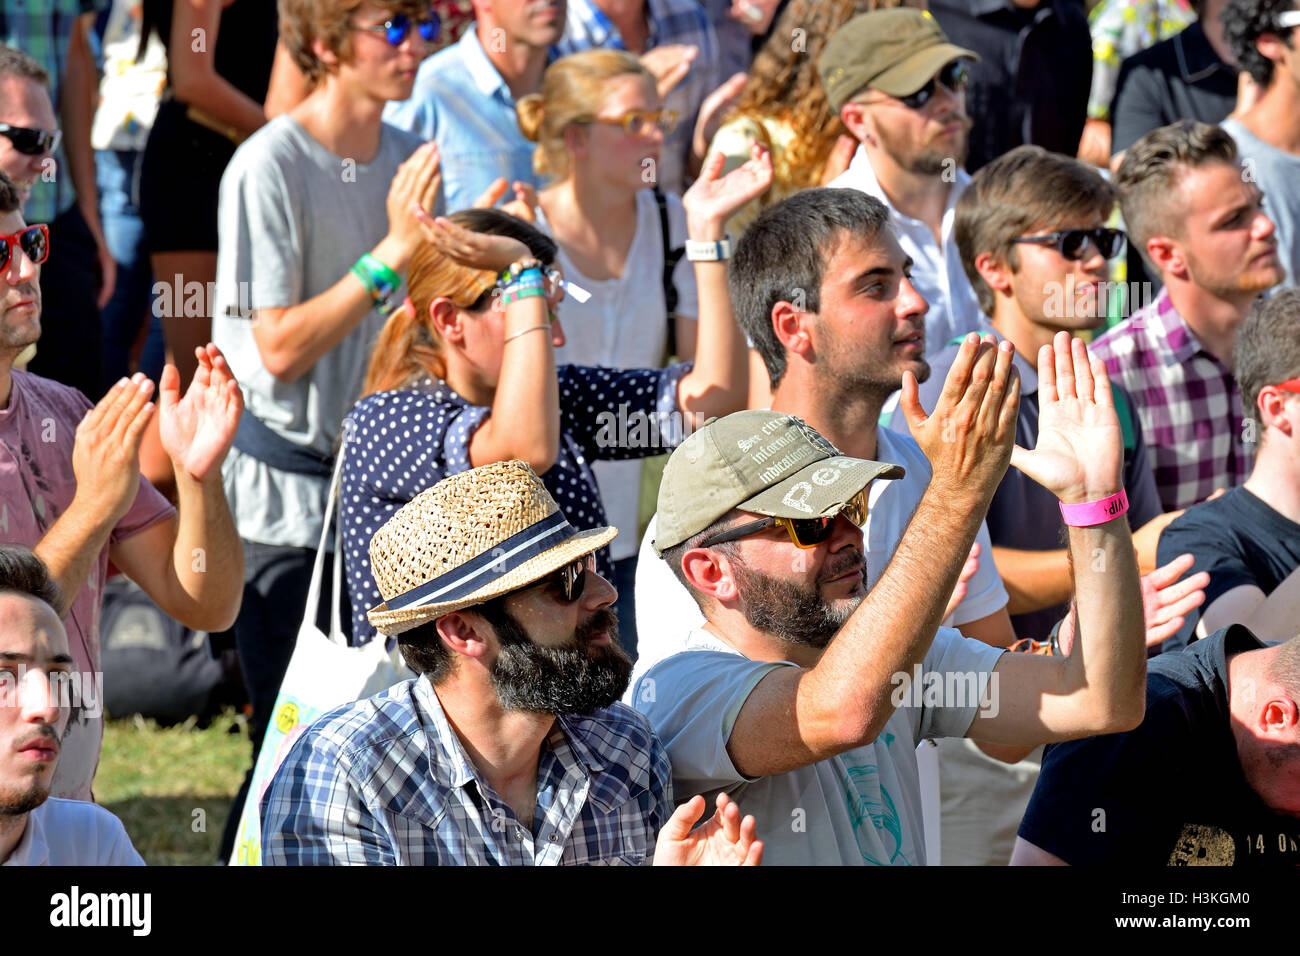 MADRID - SEP 13: Menge in einem Konzert am Dcode Festival am 13. September 2014 in Madrid, Spanien. Stockfoto